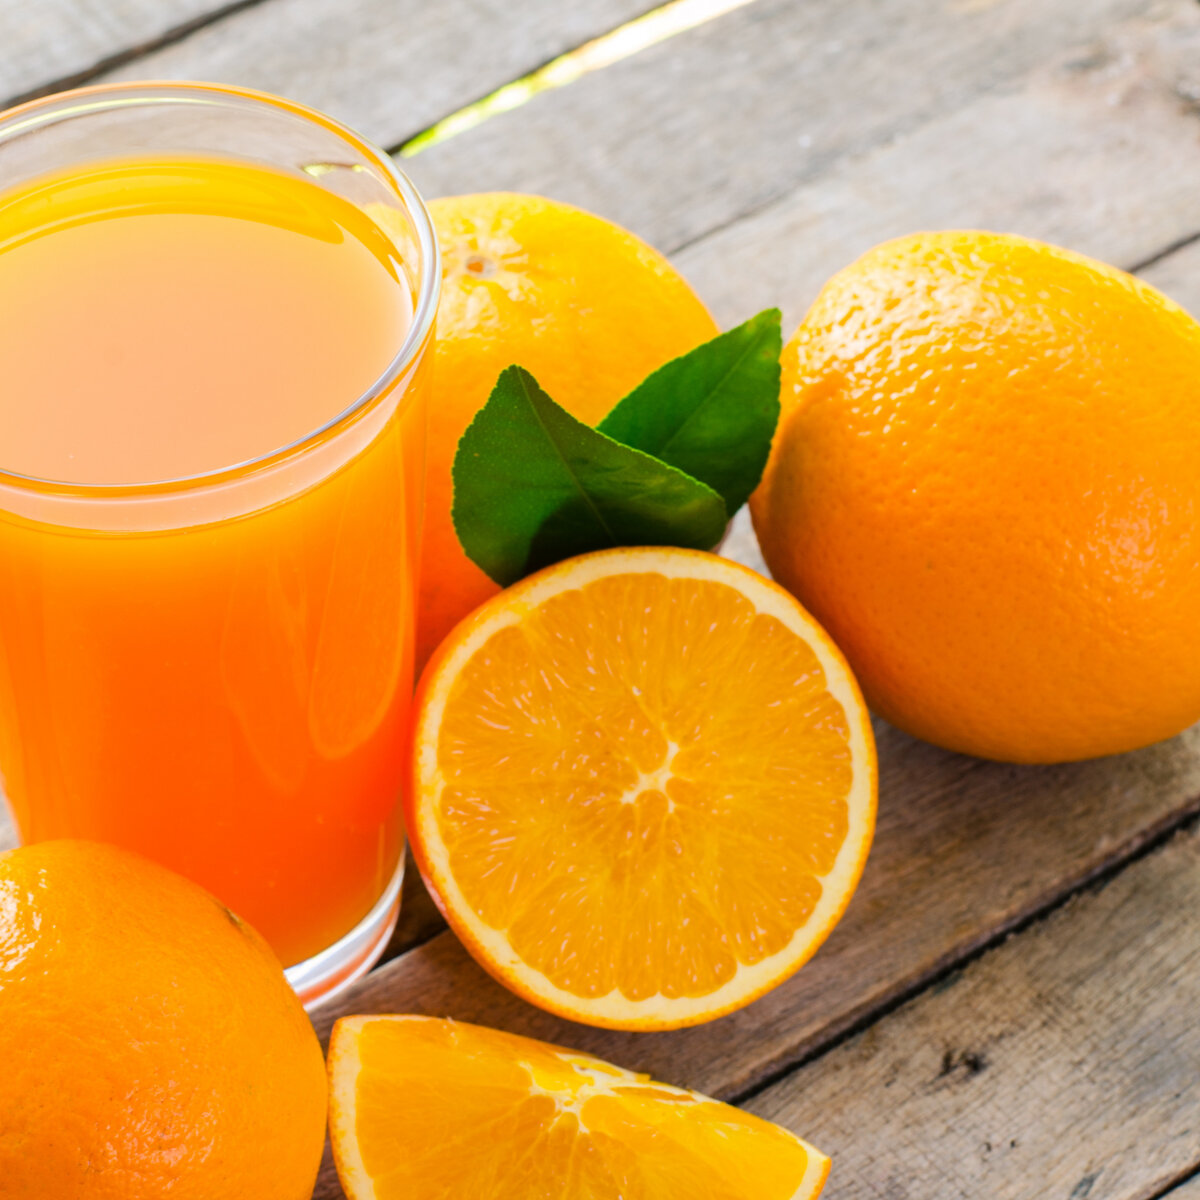 Оранж Джус. Апельсиновый сок. Апельсины для сока. Свежевыжатый сок апельсин.